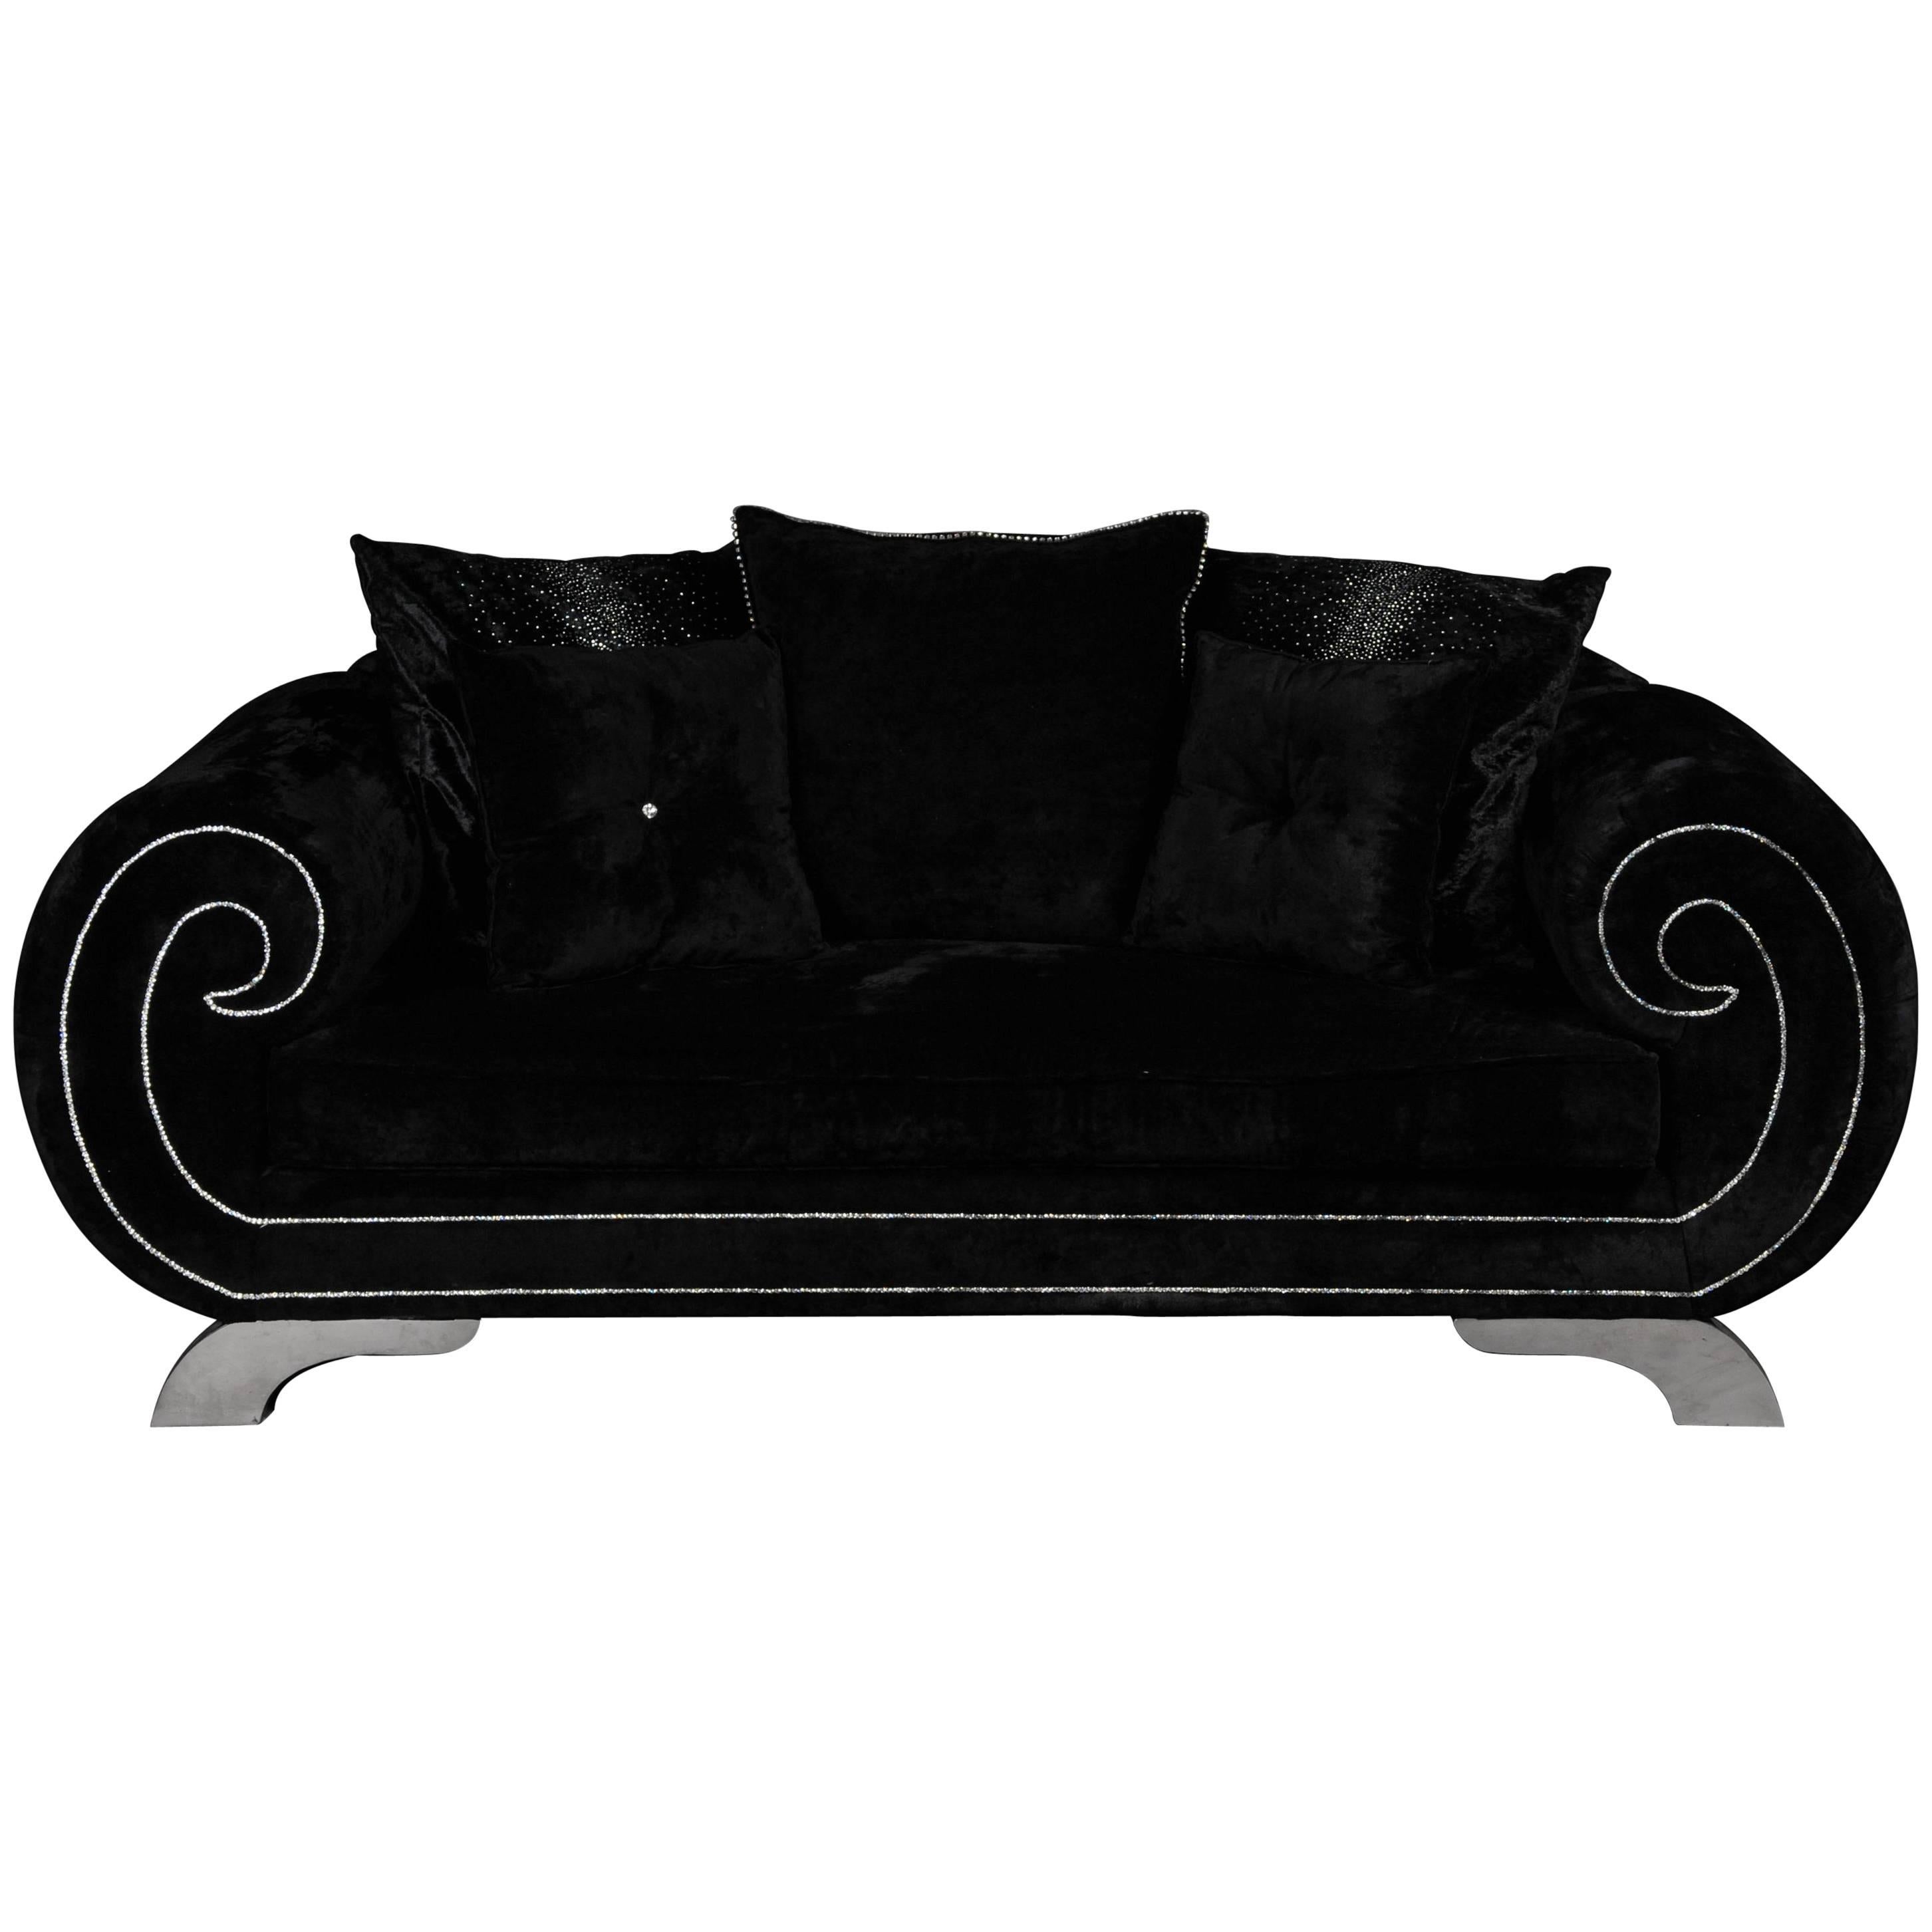 Einzigartiges luxuriöses Designer-Sofa oder Couch, Strasssteine, schwarzer Samt. Erwähnungen des Künstlers